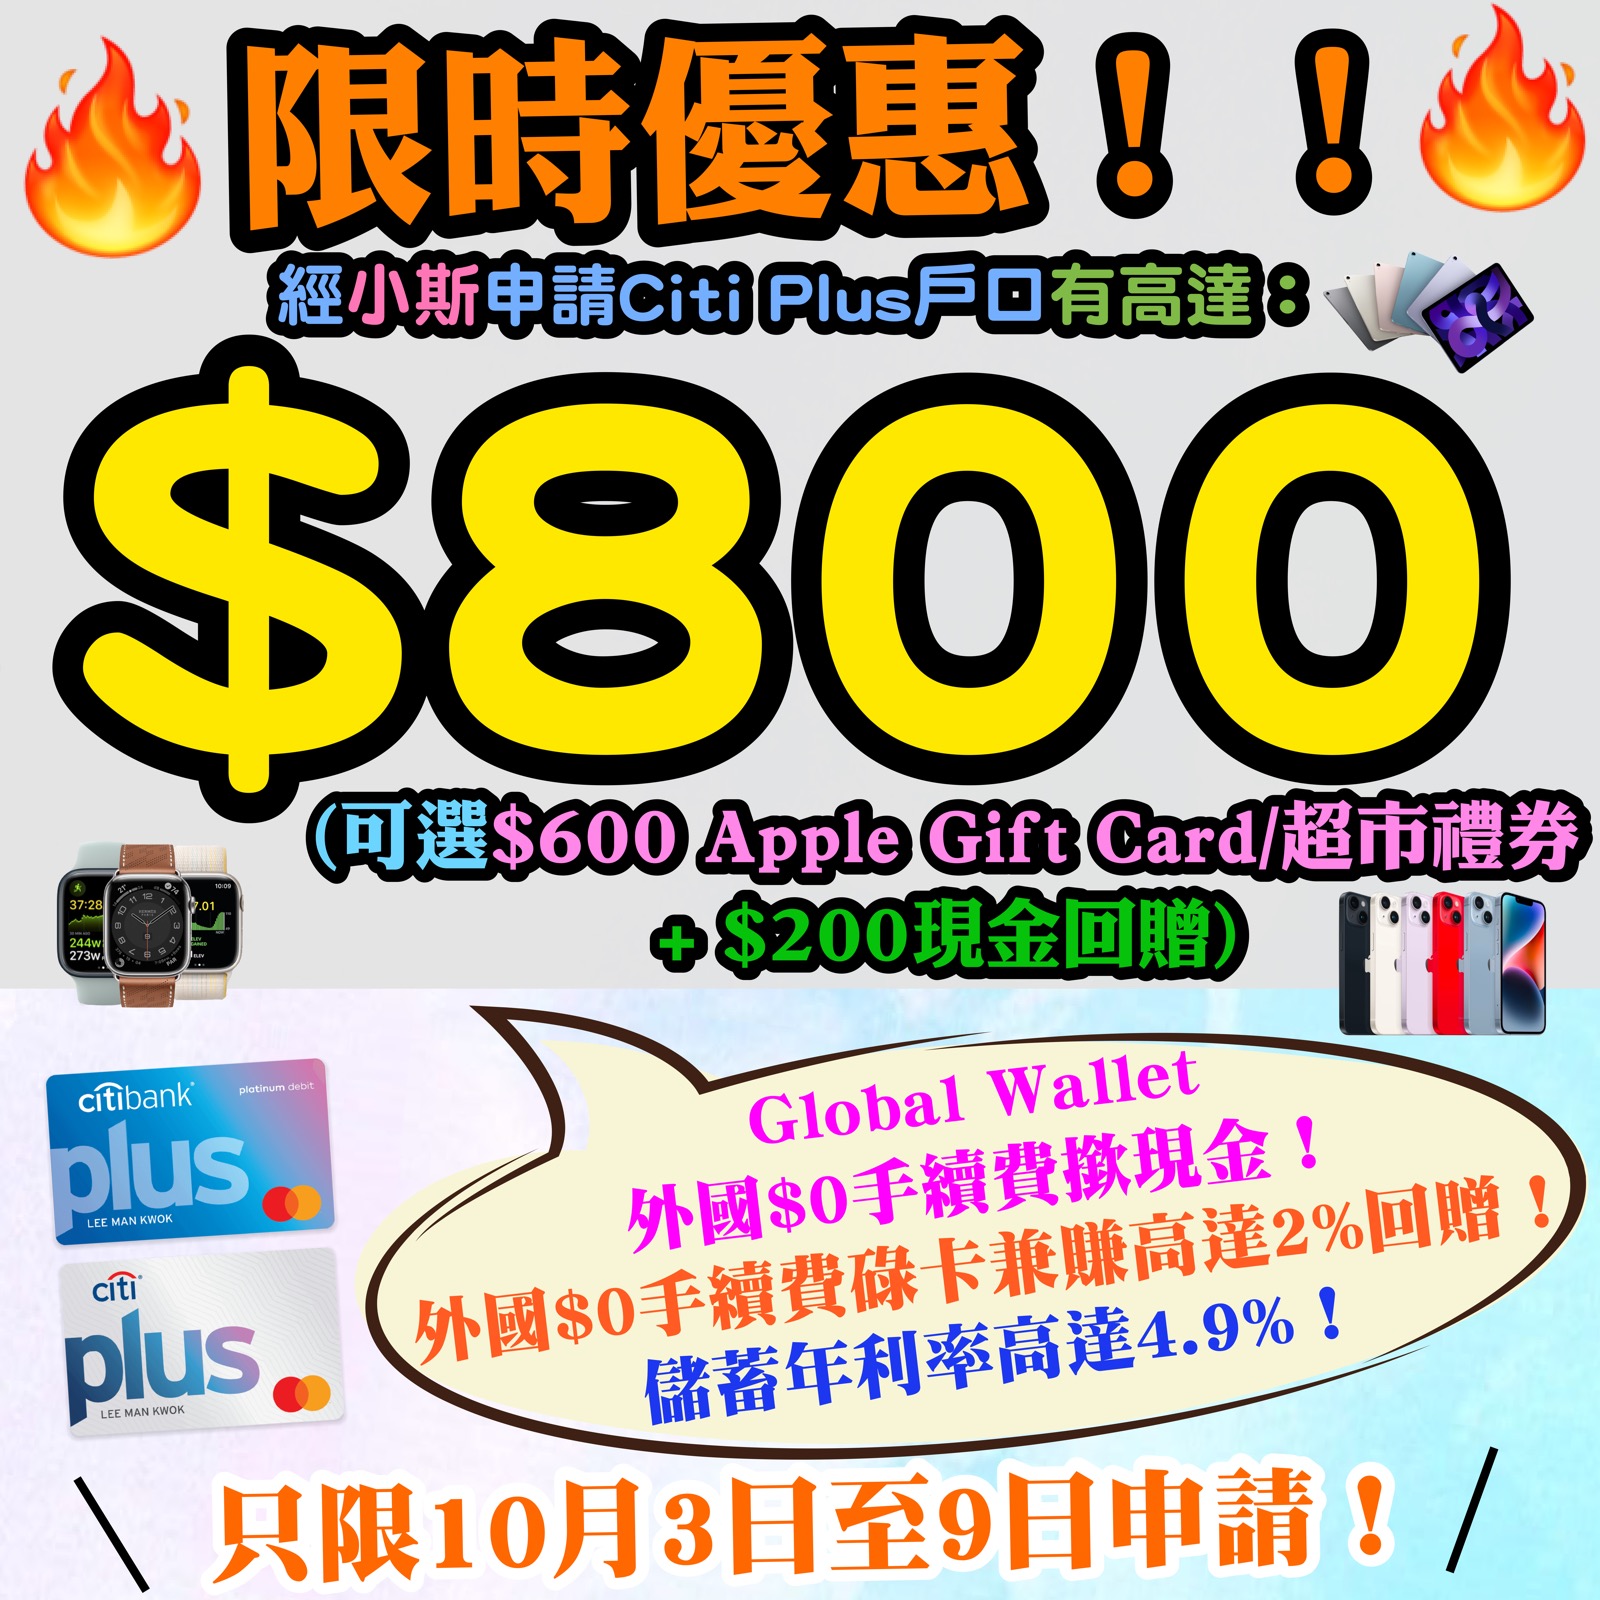 【🔥🔥🔥限時優惠❗❗小斯Citi Plus戶口 + Citi信用卡送高達$2,250❗❗】1月10日至1月20日期間，經小斯申請Citi Plus戶口，毋須放錢/簽賬可以有$250 Apple Gift Card/超市禮券 ！存入HK$10,000新資金再多HK$200現金回贈！連同迎新 + 基本獎賞有高達$3,550！儲蓄年利率高達5.4%，今次優惠完咗就無啦！